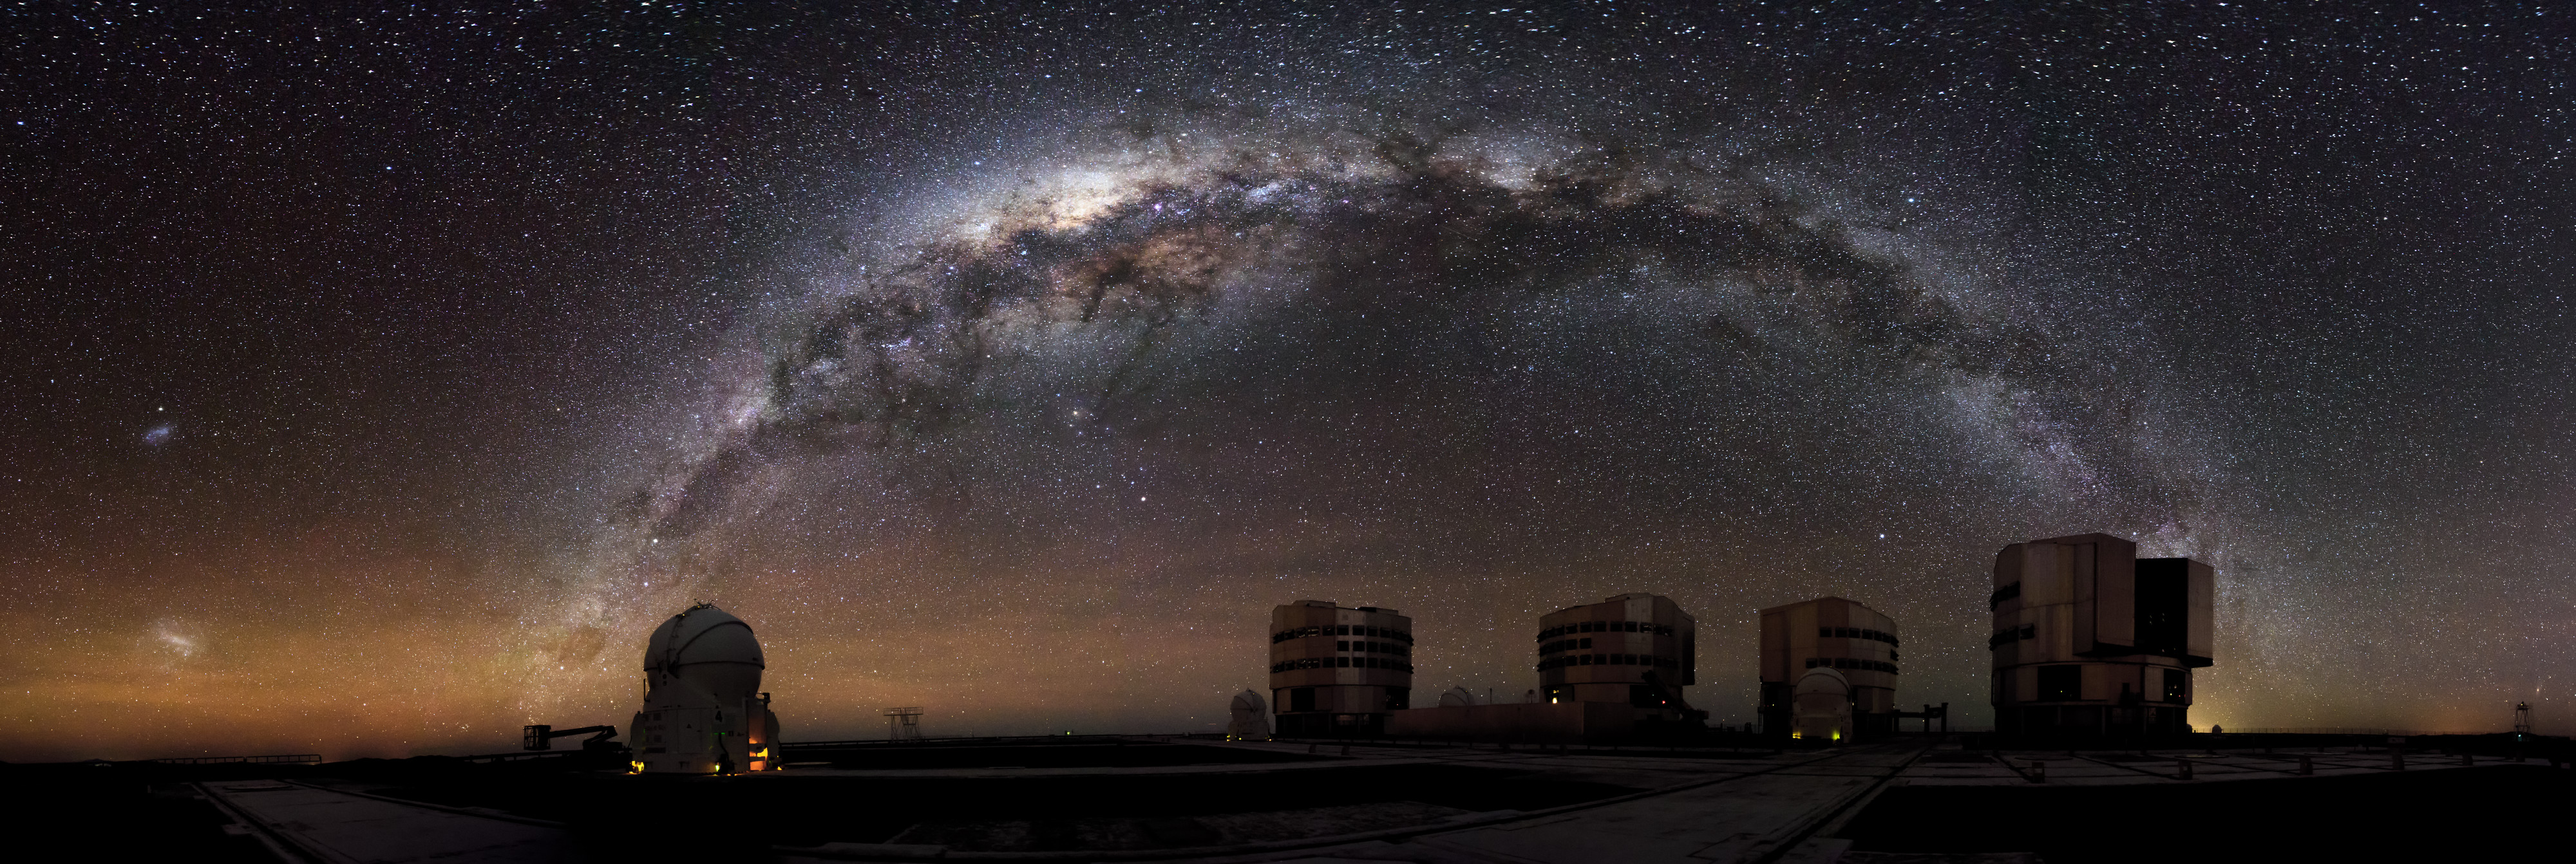 L’Observatoire Paranal, situé dans le désert d’Atacama au nord du Chili, offre des conditions d’observations optimales et ultra performantes grâce au très grand télescope VLT (very large telescope). © A. Russell, ESO.